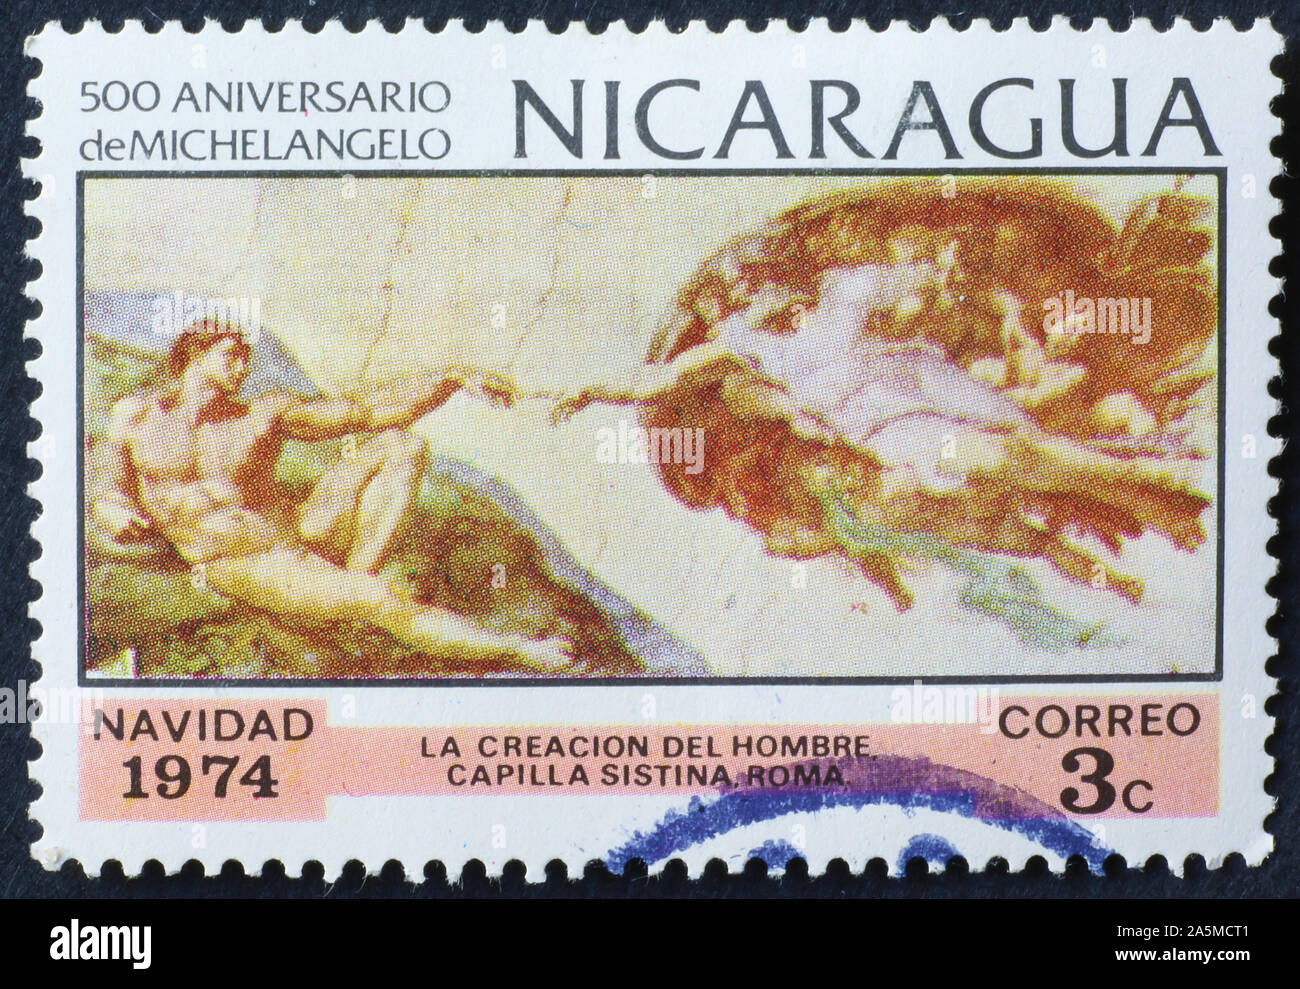 Die Erschaffung des Menschen durch Michelangelo auf Briefmarke von Nicaragua Stockfoto